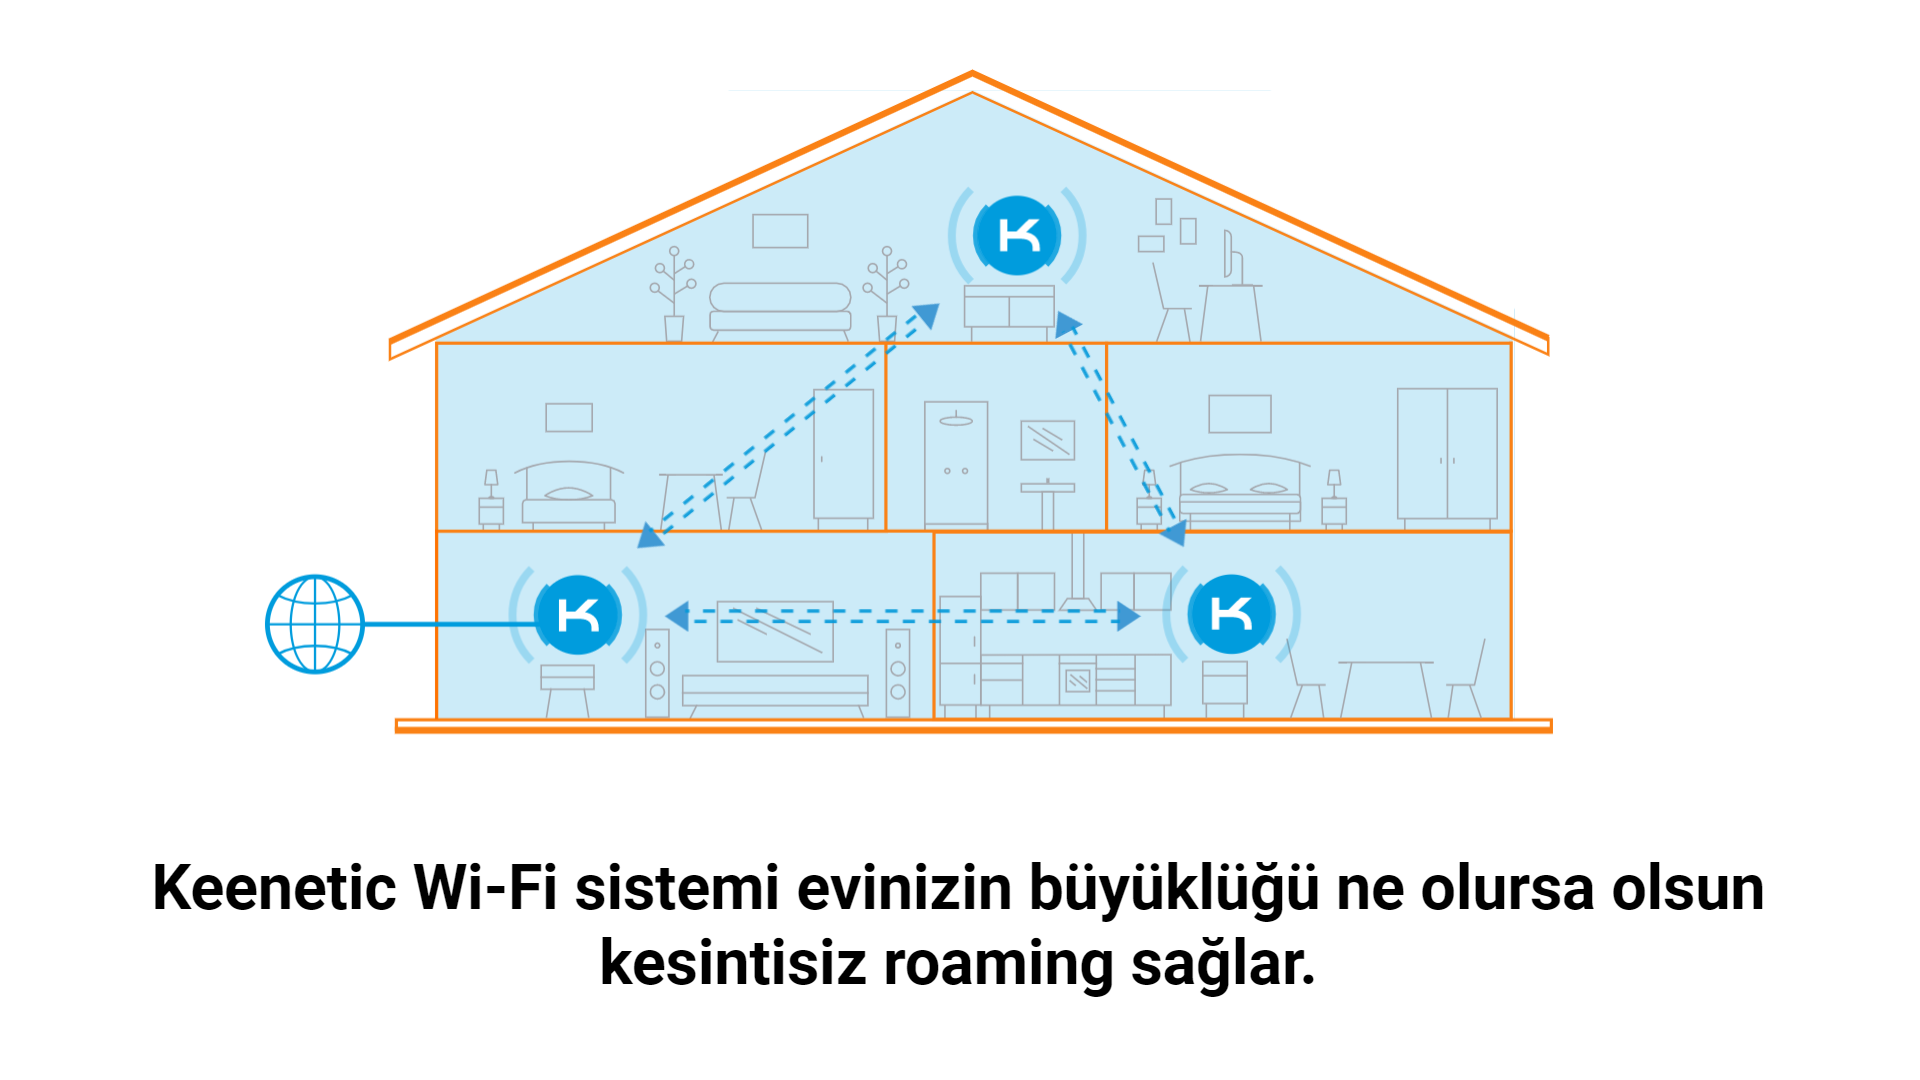 Evinizin her köşesinde güçlü internet bağlantısı ütopya değil!